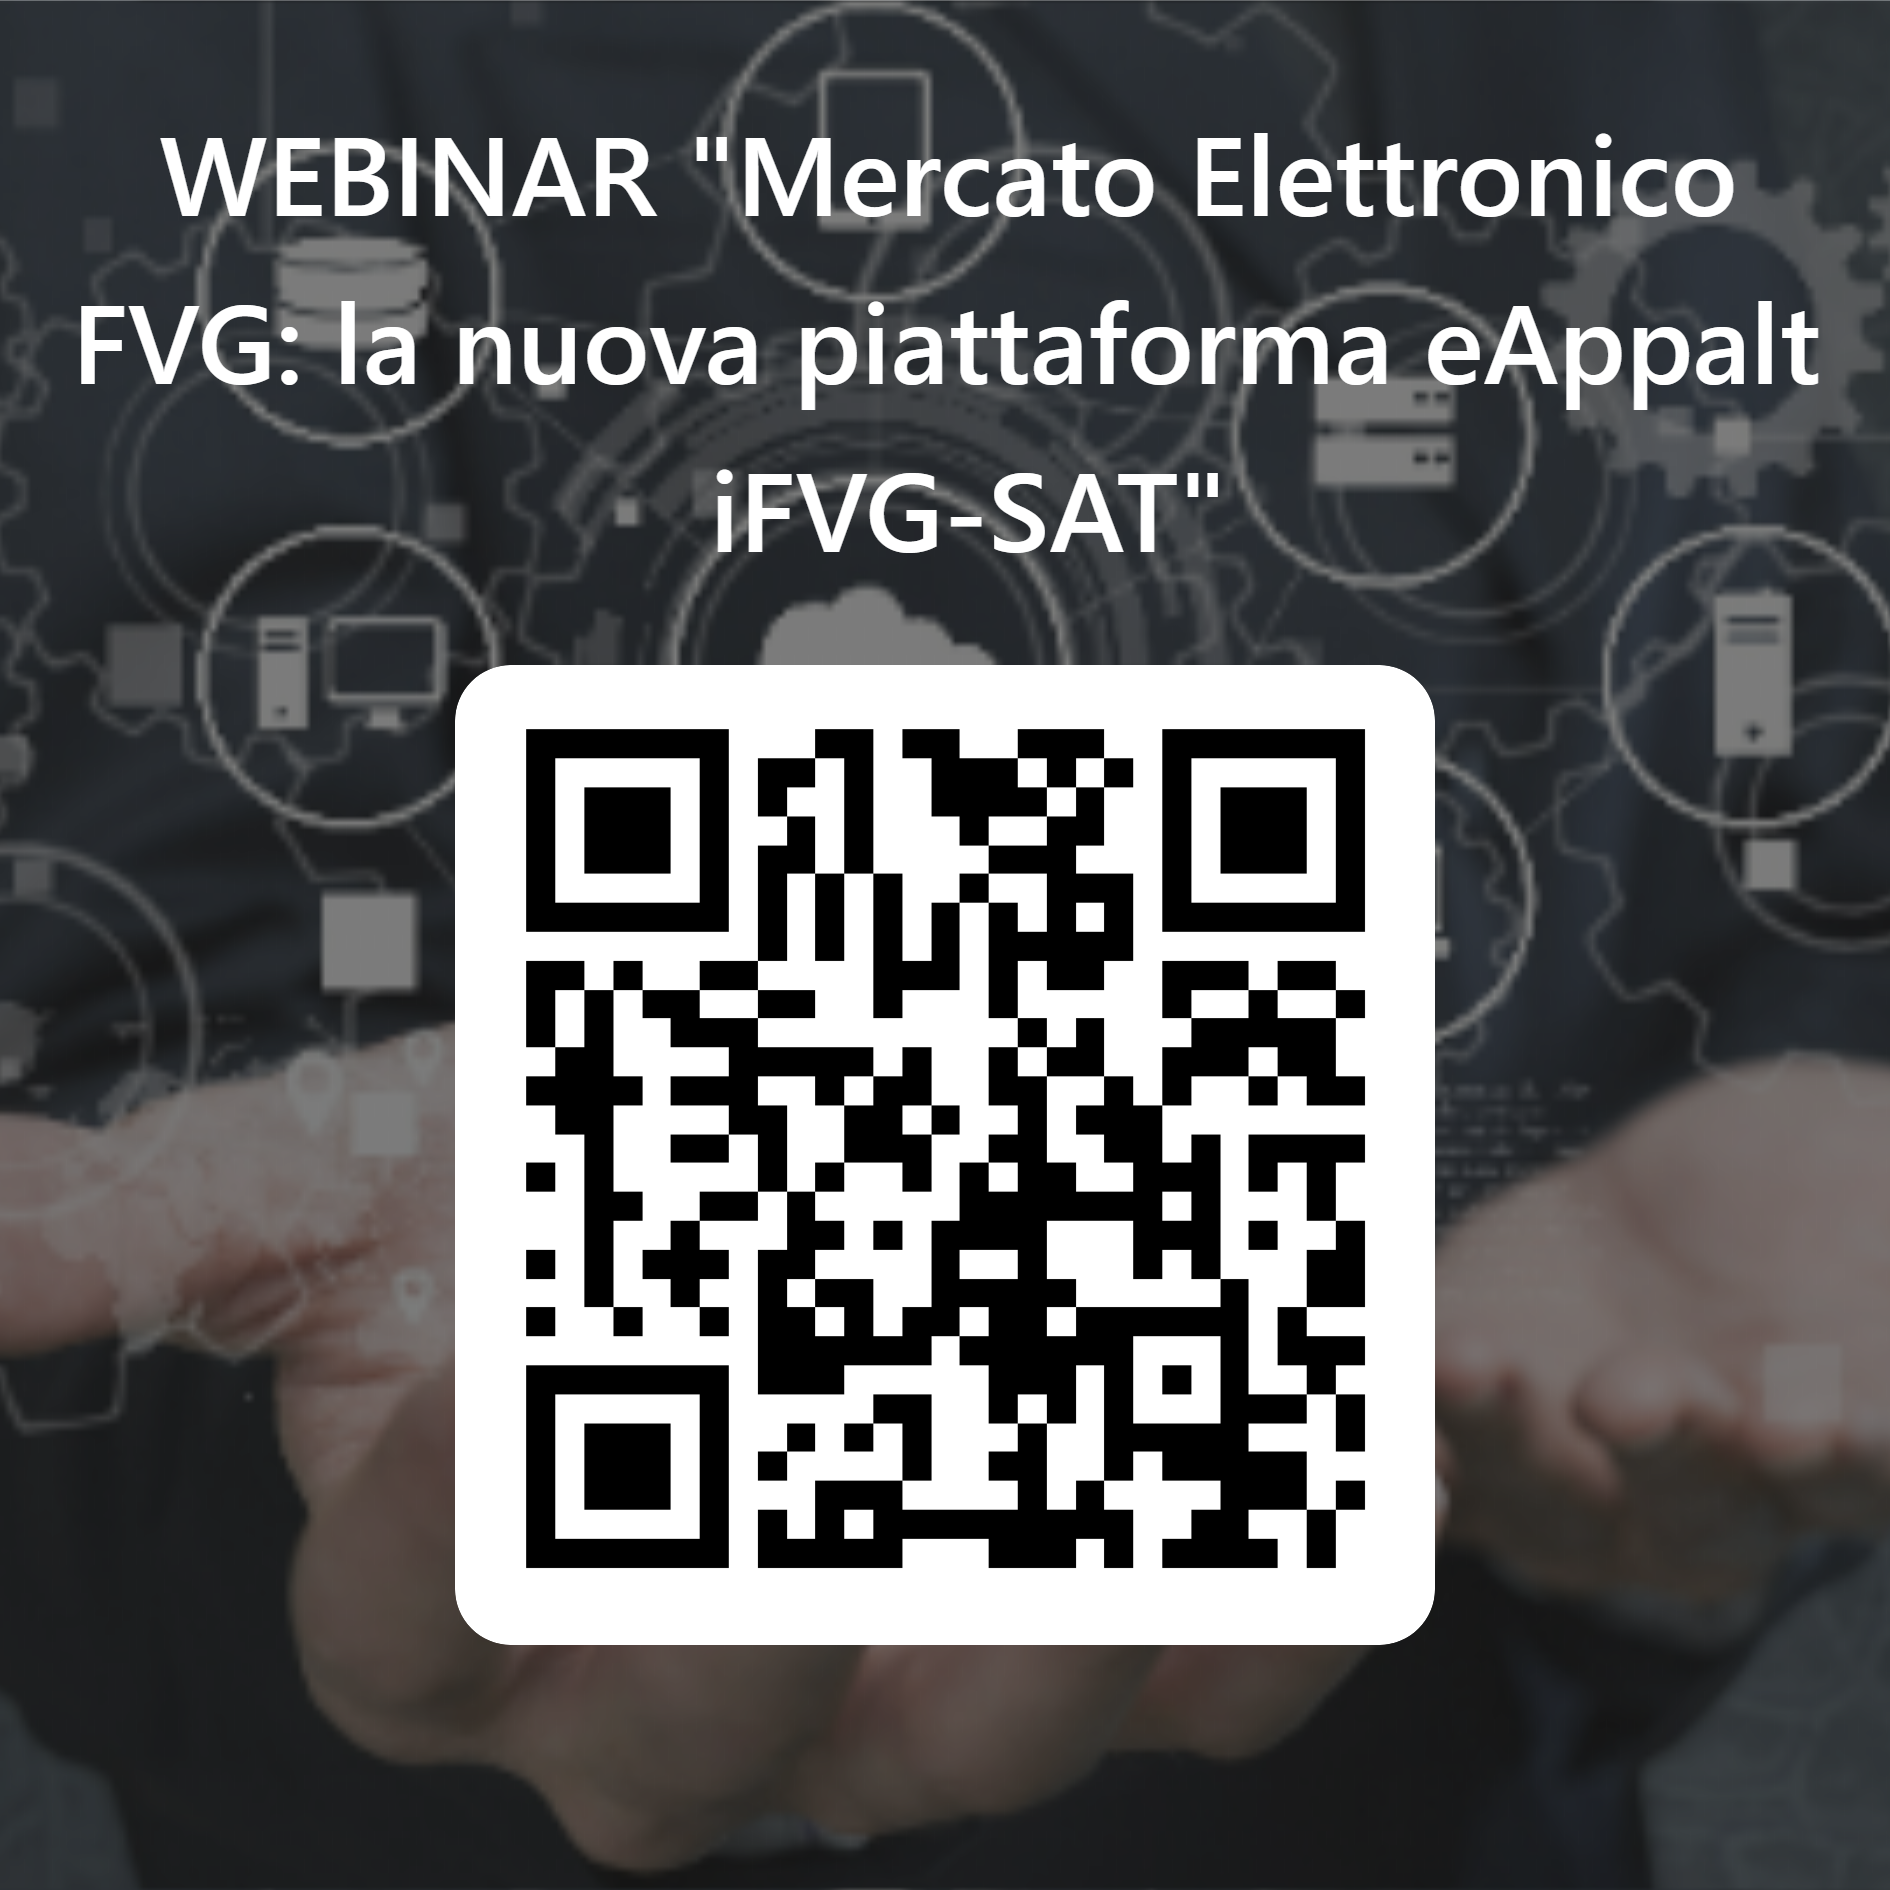 QRCode per iscrizione al webinar "Mercato Elettronico FVG: la nuova piattaforma eAppaltiFVG-SAT"